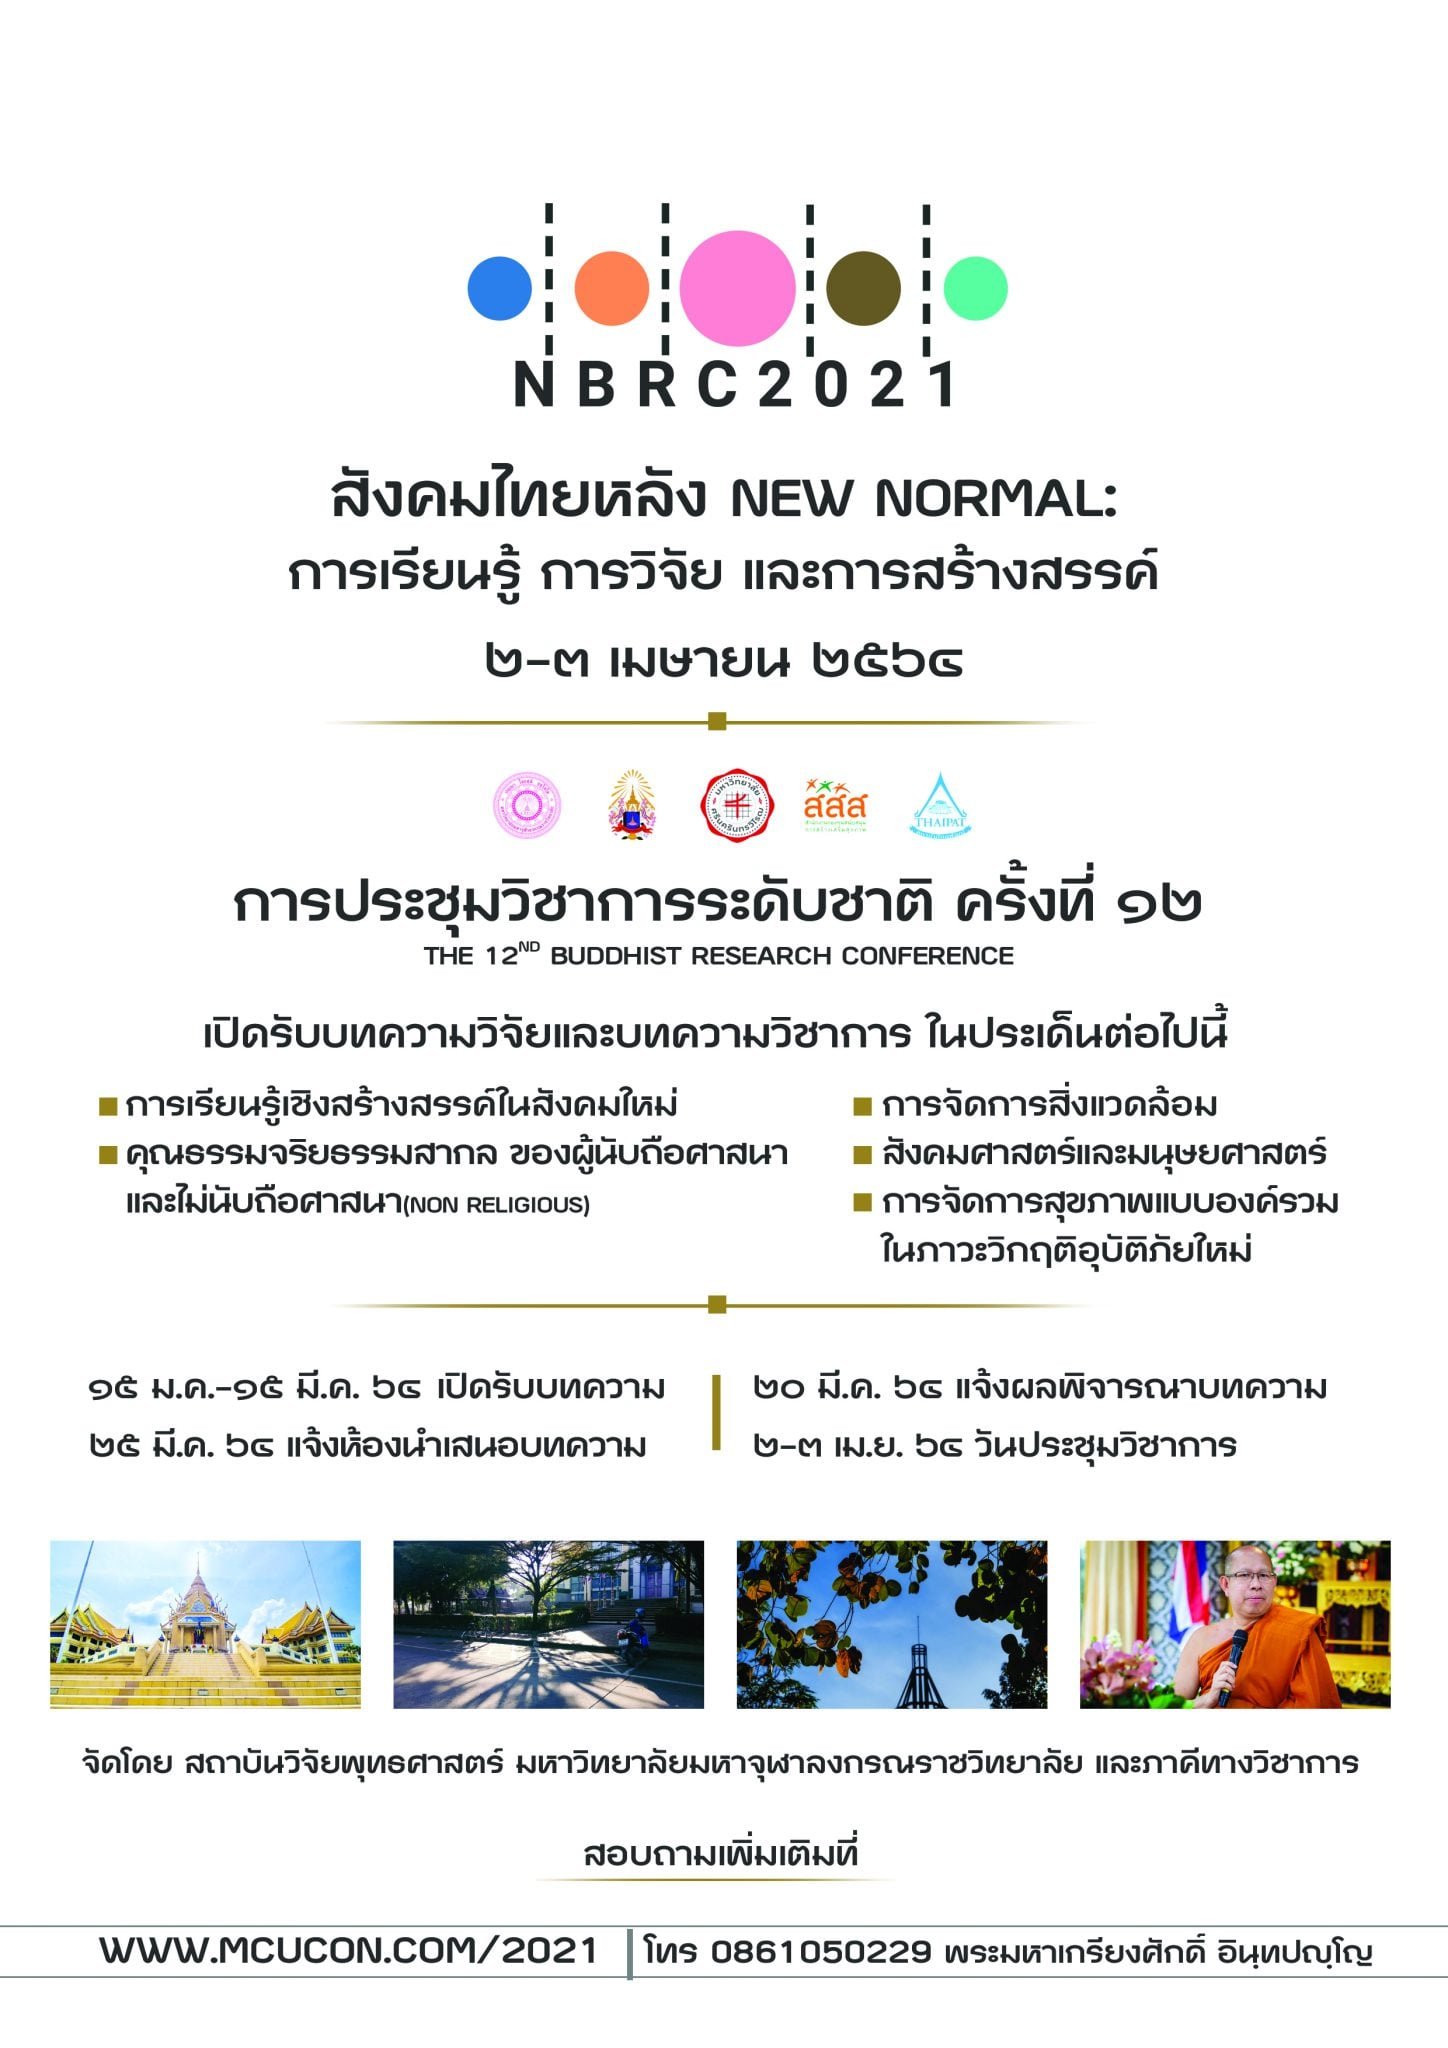 การประชุมวิชาการระดับชาติ ครั้งที่ 12: "สังคมไทยหลัง NEW NORMAL : การเรียนรู้ การวิจัย และการสร้างสรรค์